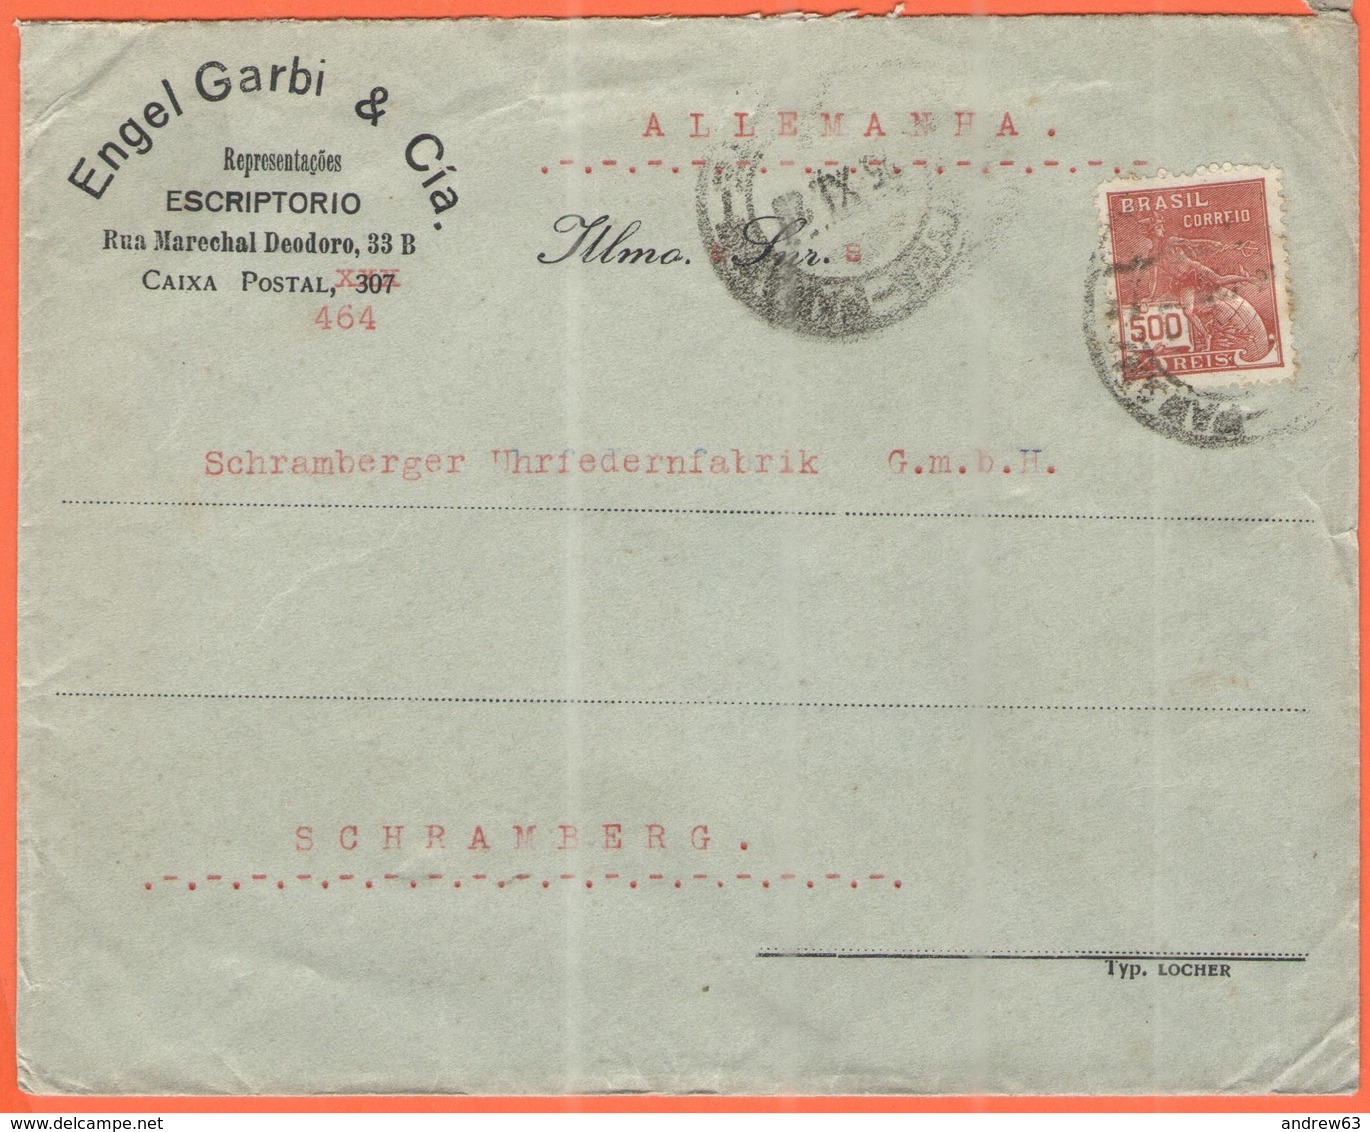 BRASILE - BRASIL - 1929 - 500 Reis - Engel Garbi & Cia - Viaggiata Da Brasil Per Schramberg, Germany - Storia Postale